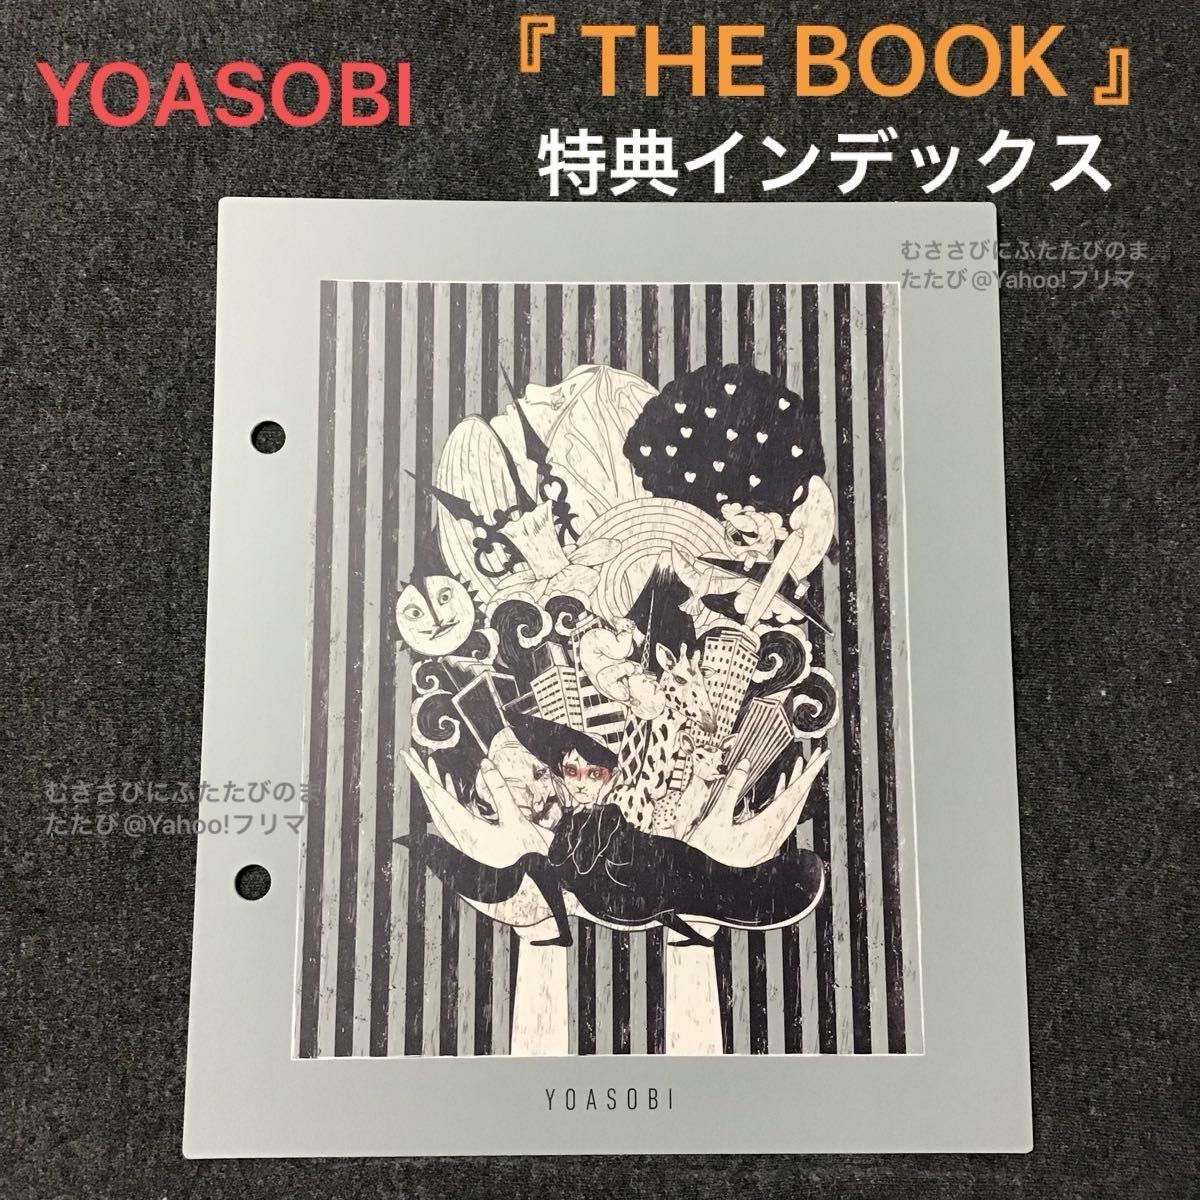 【特典のみ】 YOASOBI THE BOOK 特典 インデックス 群青 Amazon アマゾン